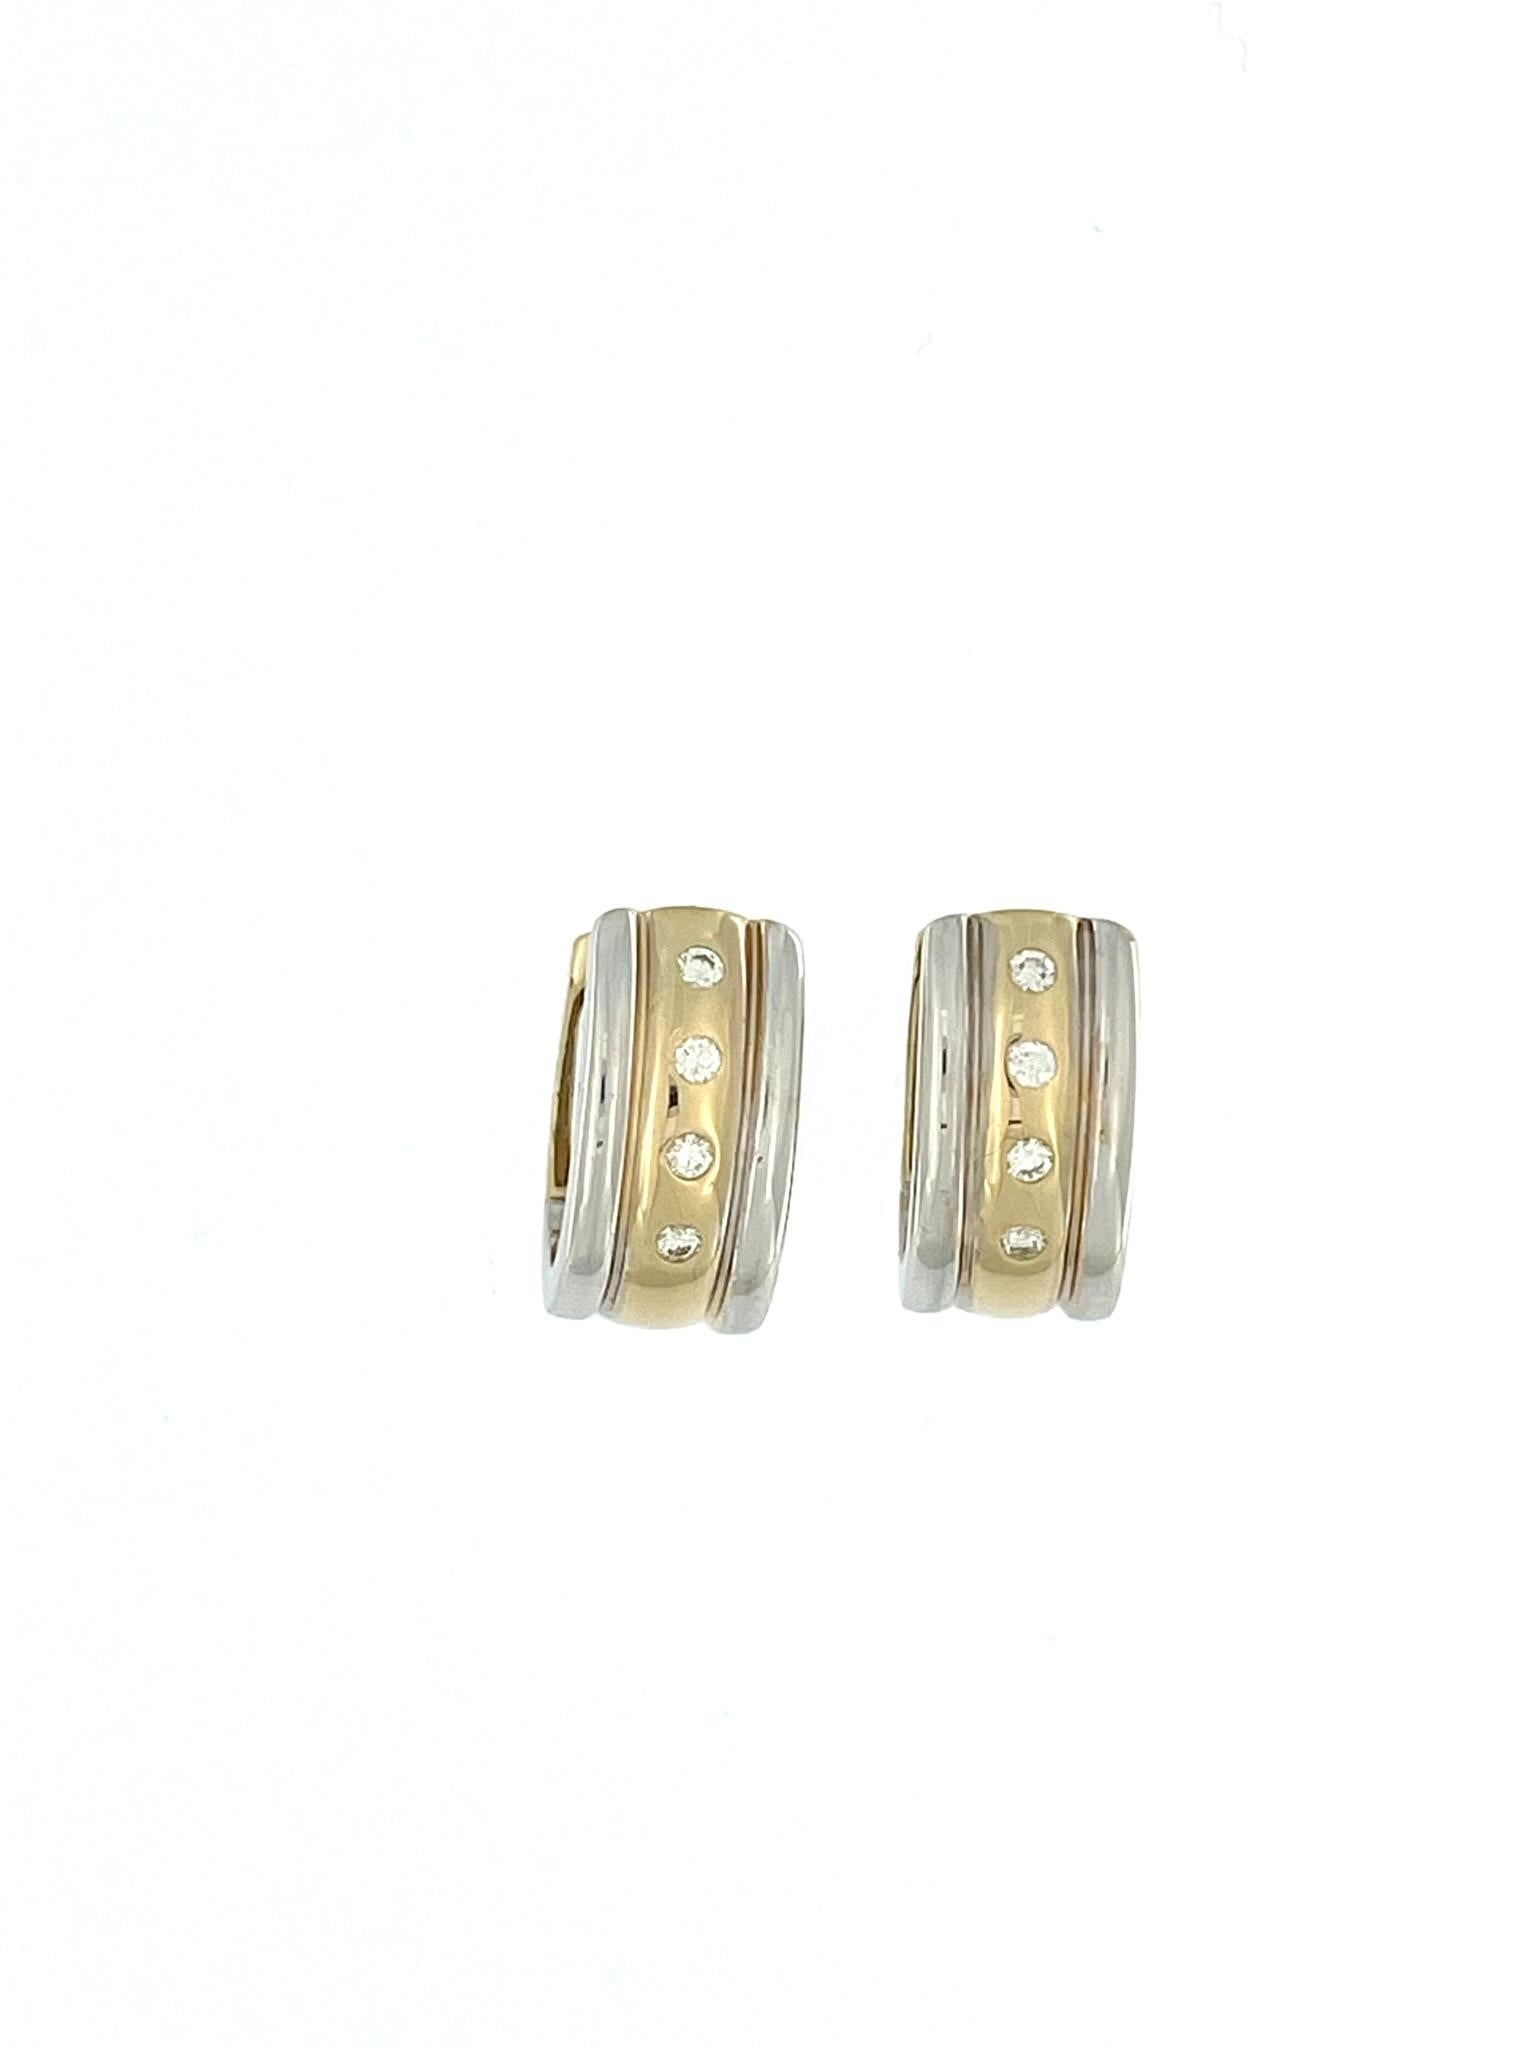 Les Eleg en or 14 carats avec diamants de Moncara sont un accessoire luxueux et sophistiqué qui allie harmonieusement élégance et savoir-faire. Ces boucles d'oreilles exquises sont fabriquées en or 14 carats de haute qualité, présentant un beau